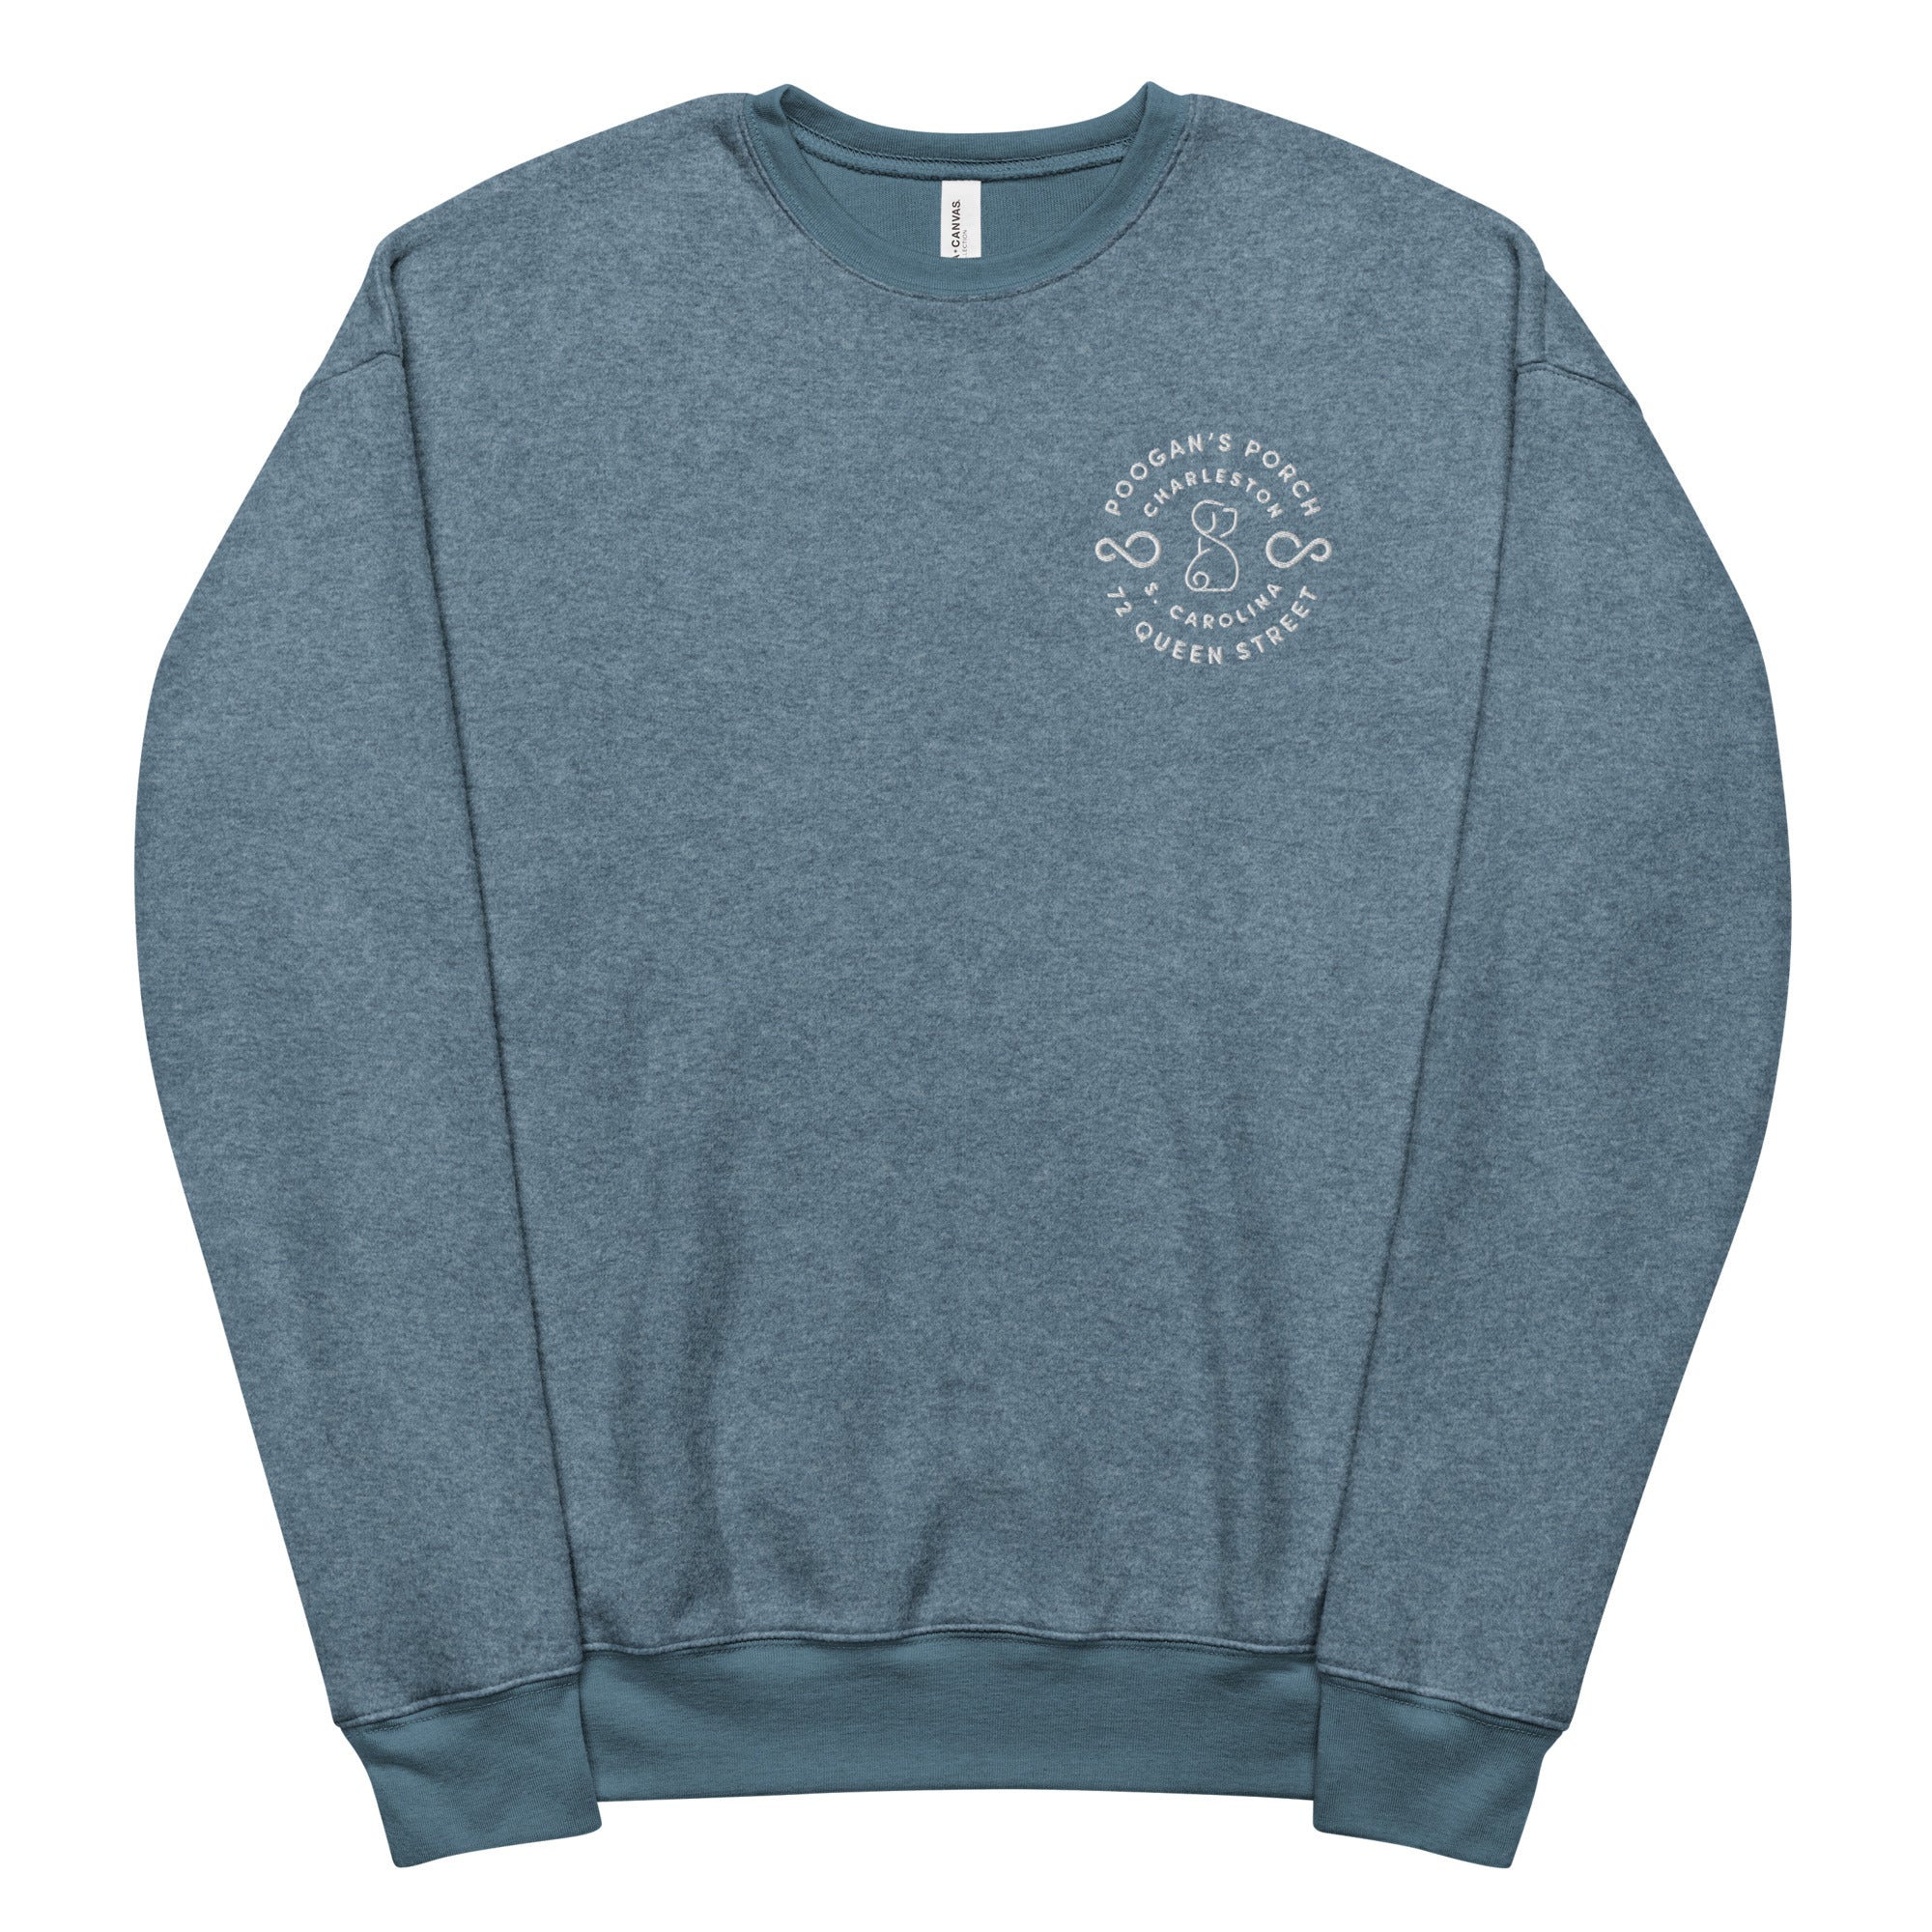 Poogan's Porch Unisex Fleece Sweatshirt (Assorted Colors)